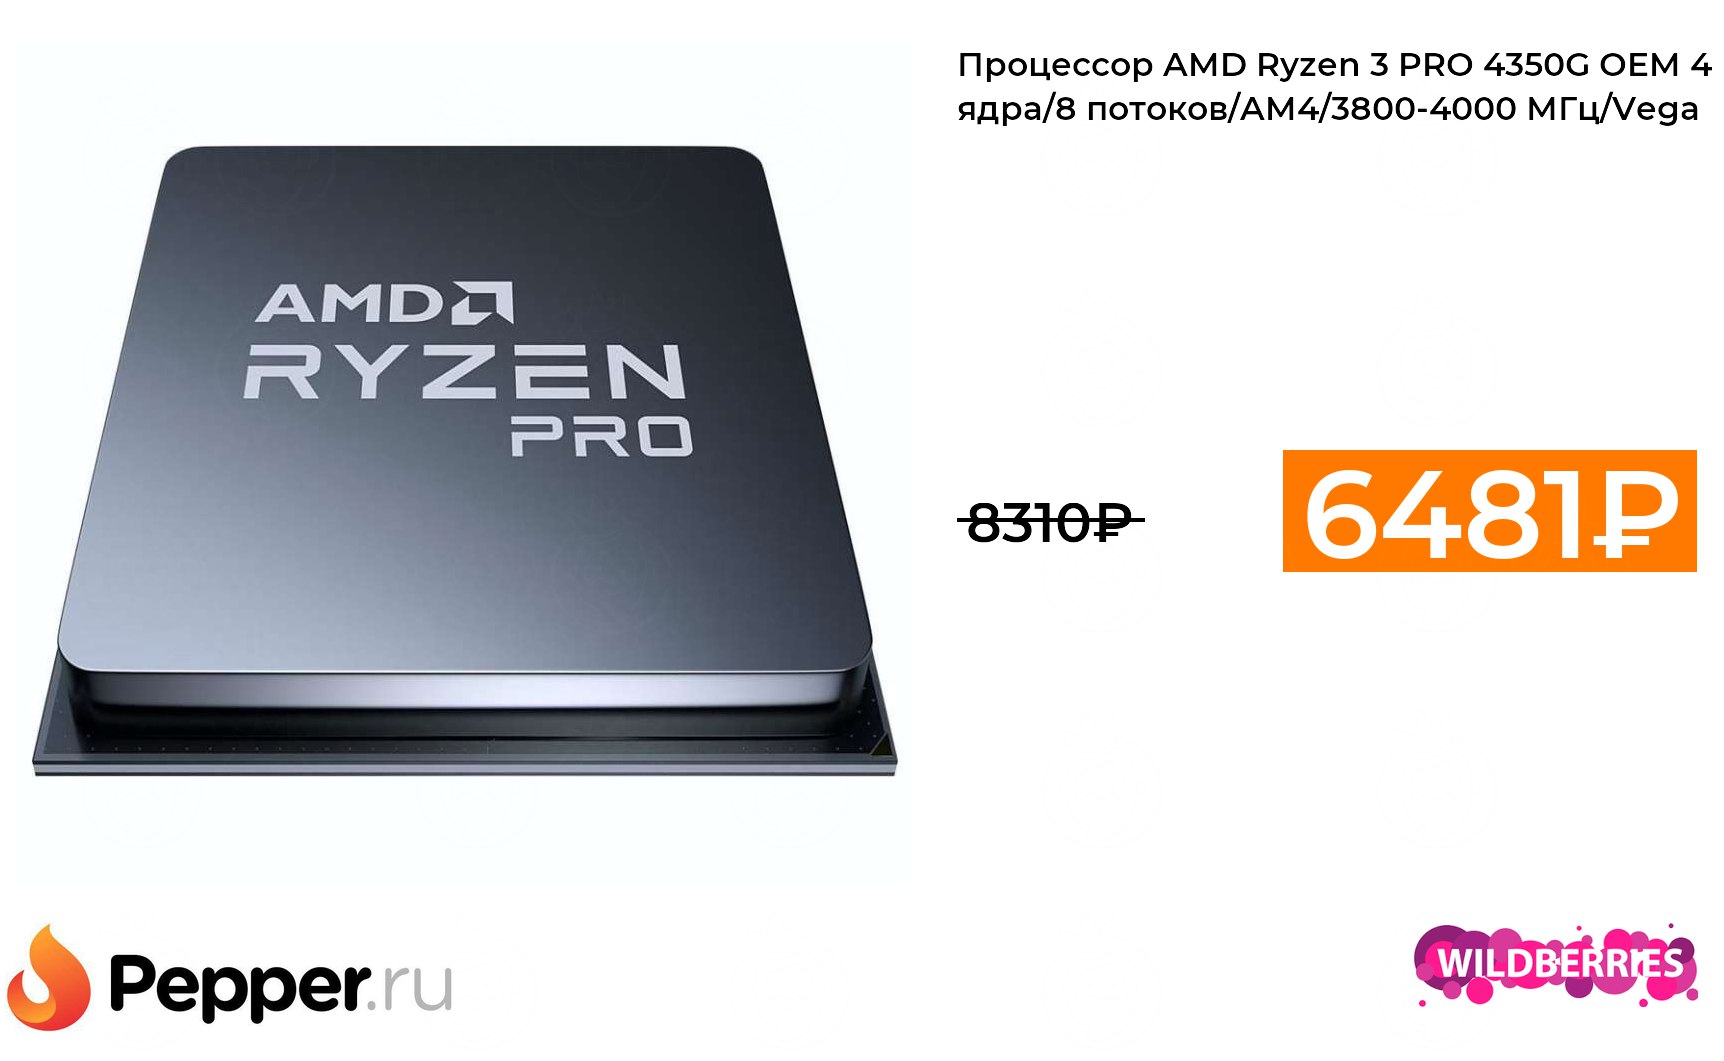 Процессор AMD Ryzen 3 Pro 4350g OEM. AMD Ryzen 3 Pro 4350g am4, 4 x 3800 МГЦ. Ryzen 3 pro 4350g